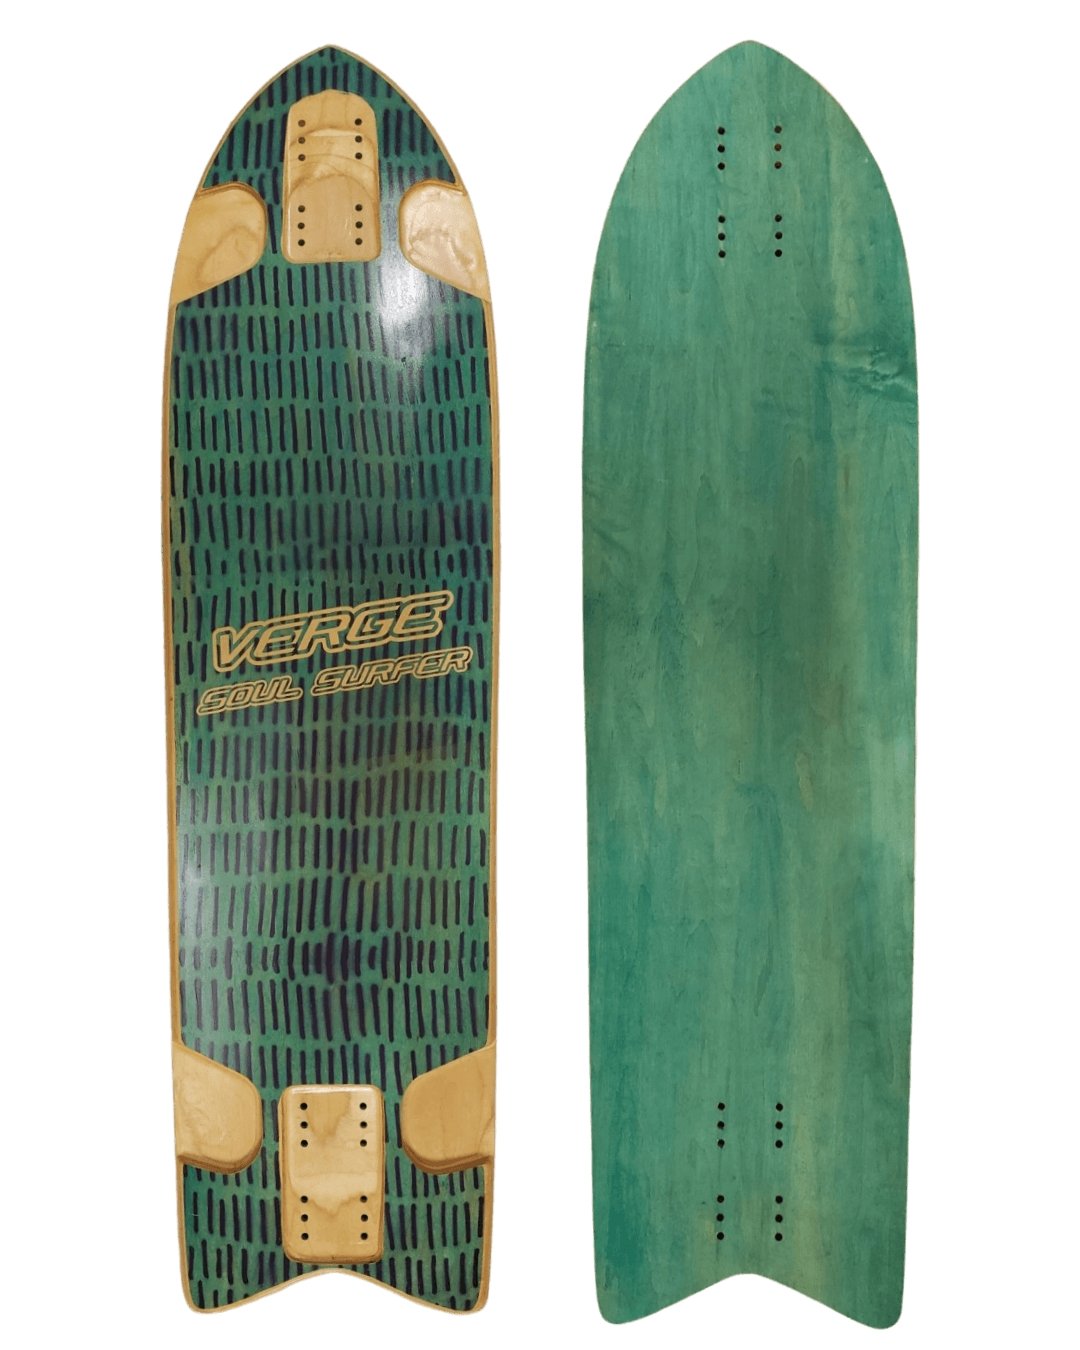 Verge: Soul Surfer OG Longboard Deck - MUIRSKATE